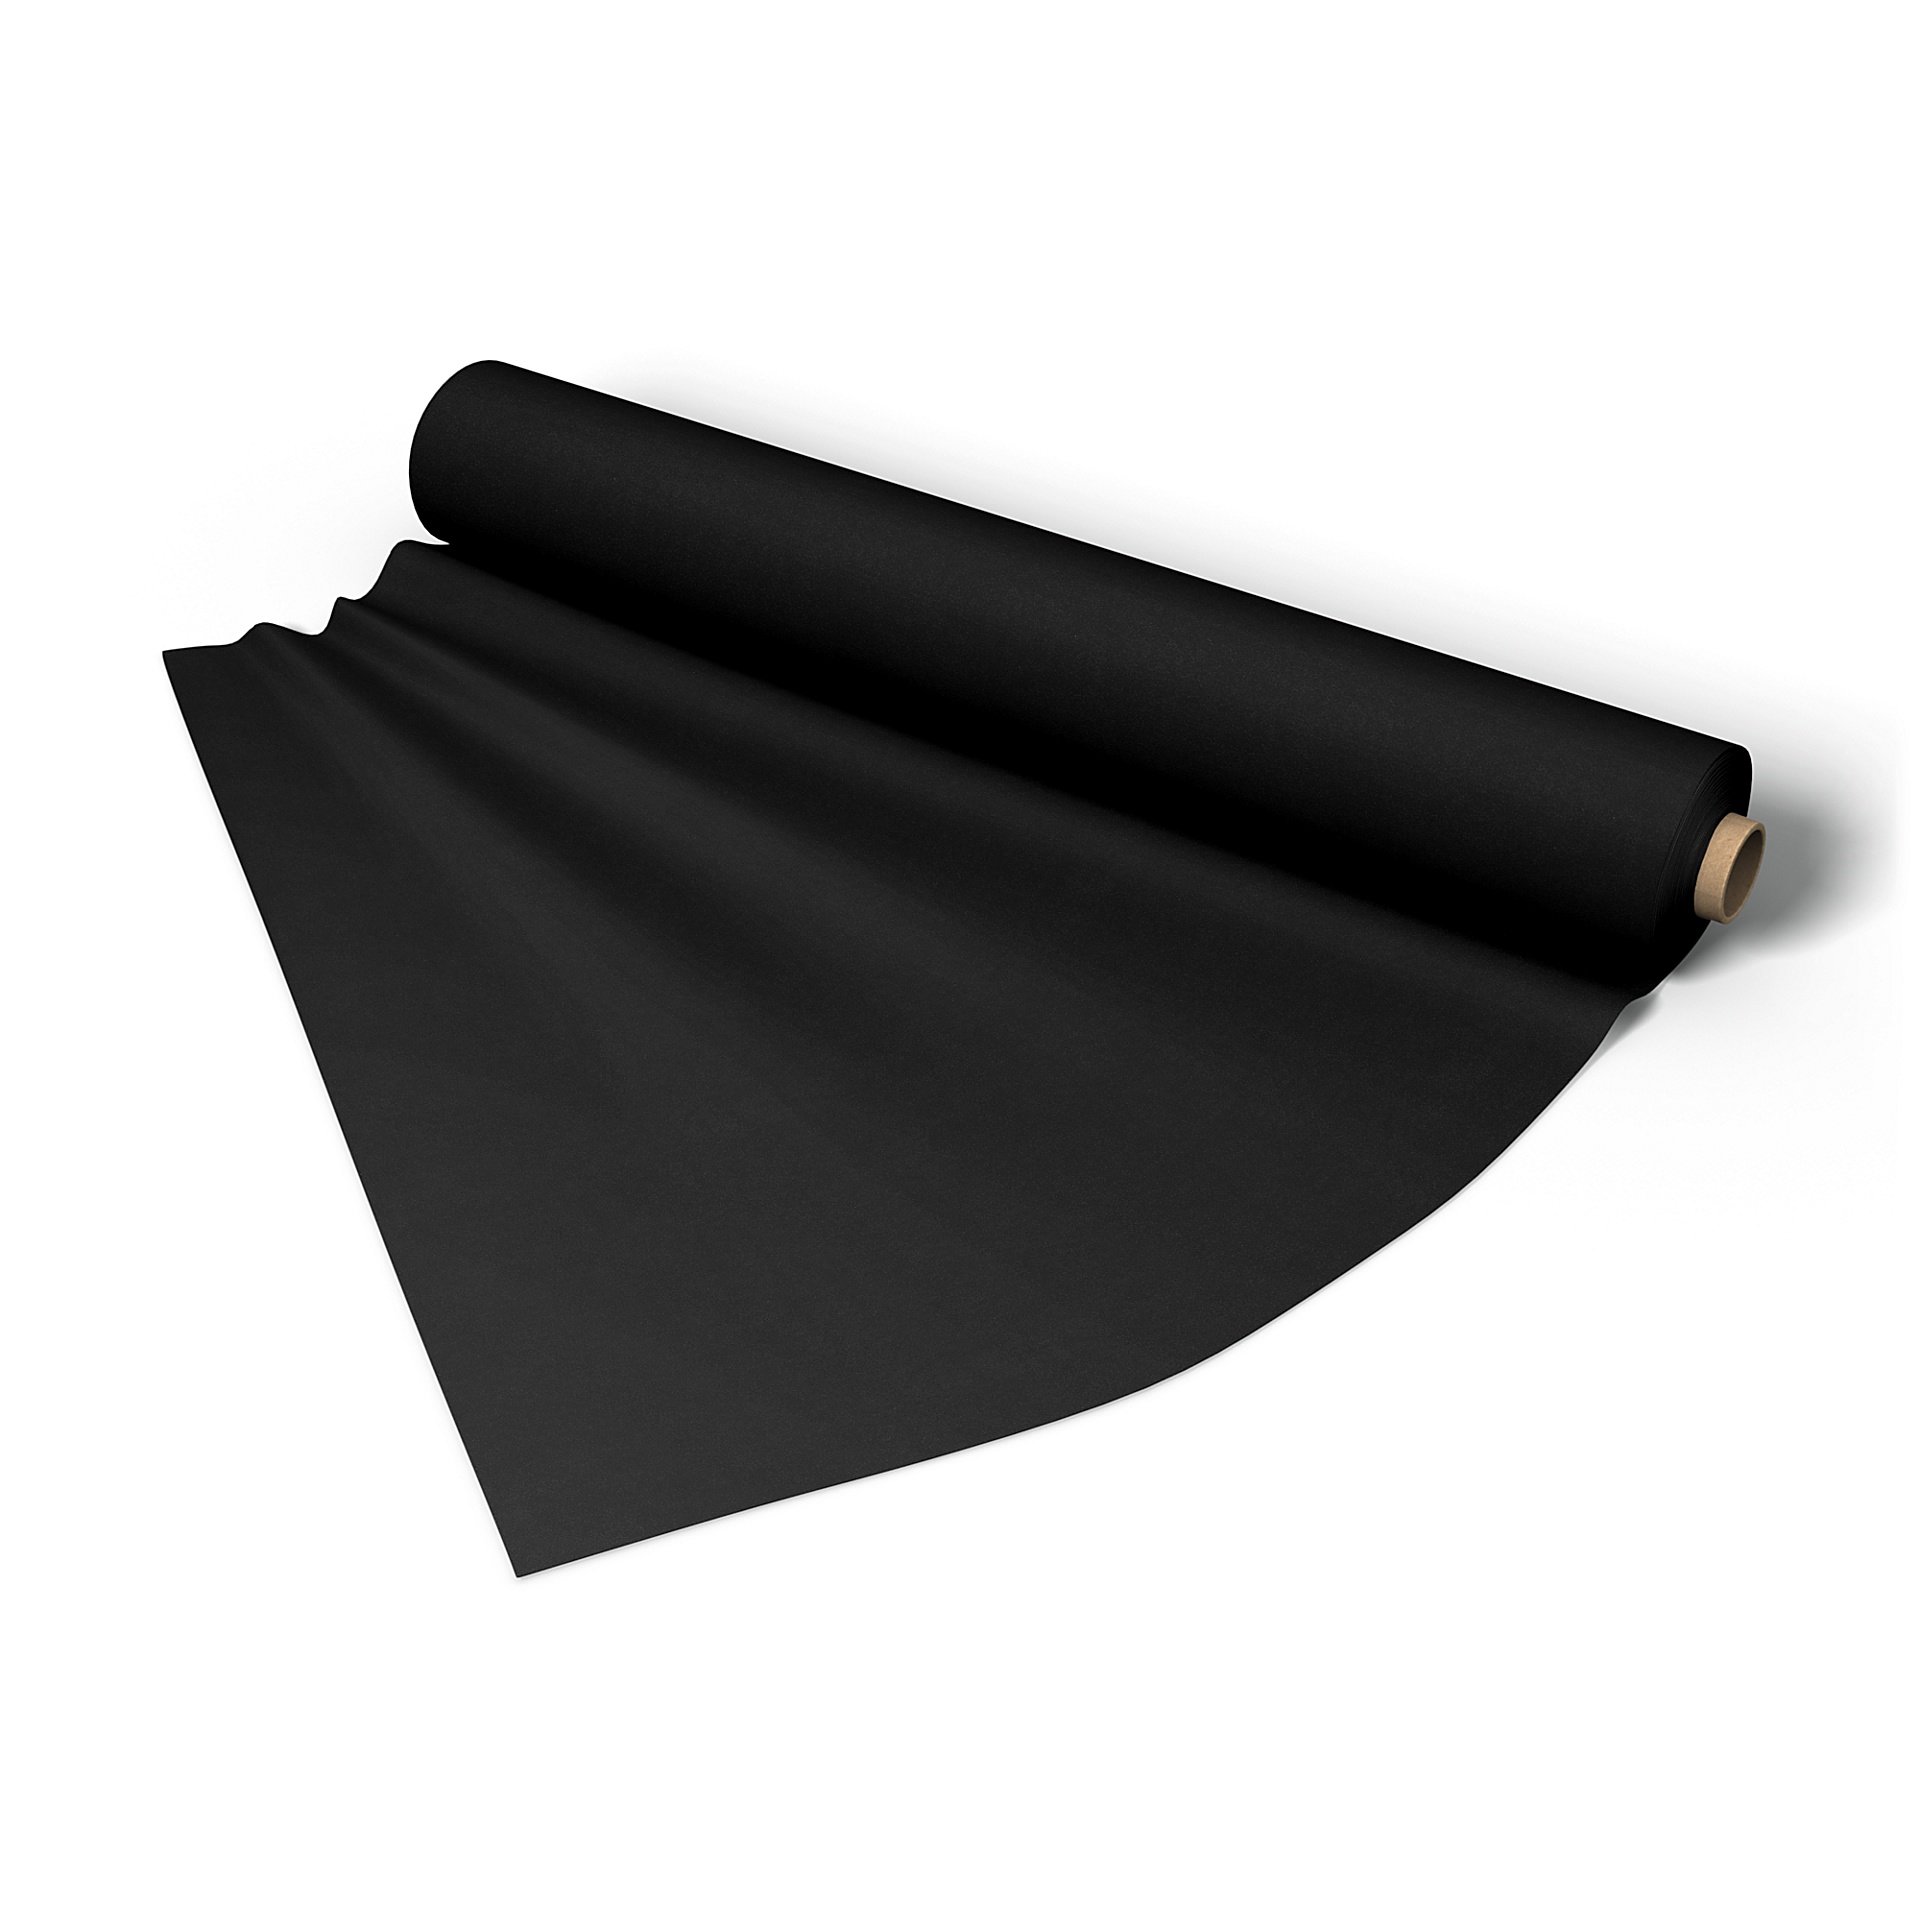 Fabric per metre, Black, Velvet - Bemz